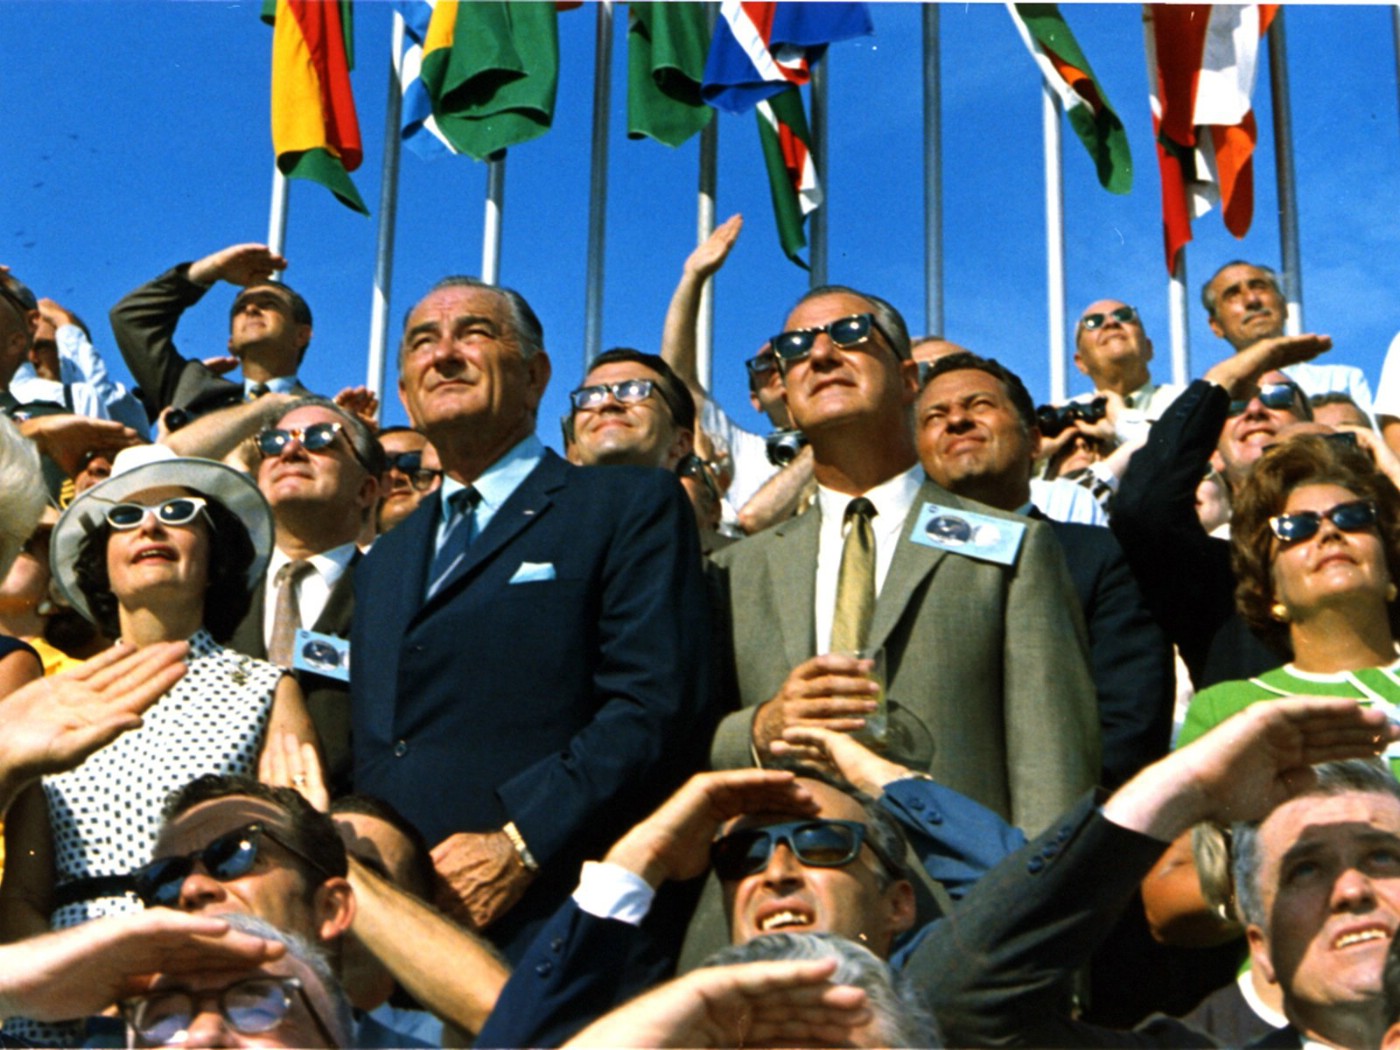 壁纸1400x1050One Giant Leap for Mankind  Spiro Agnew and Lyndon Johnson Watch the Apollo 11 Liftoff 斯皮罗 阿格纽和林登 约翰逊壁纸 阿波罗11号登月40周年纪念壁纸壁纸 阿波罗11号登月40周年纪念壁纸图片 阿波罗11号登月40周年纪念壁纸素材 人文壁纸 人文图库 人文图片素材桌面壁纸